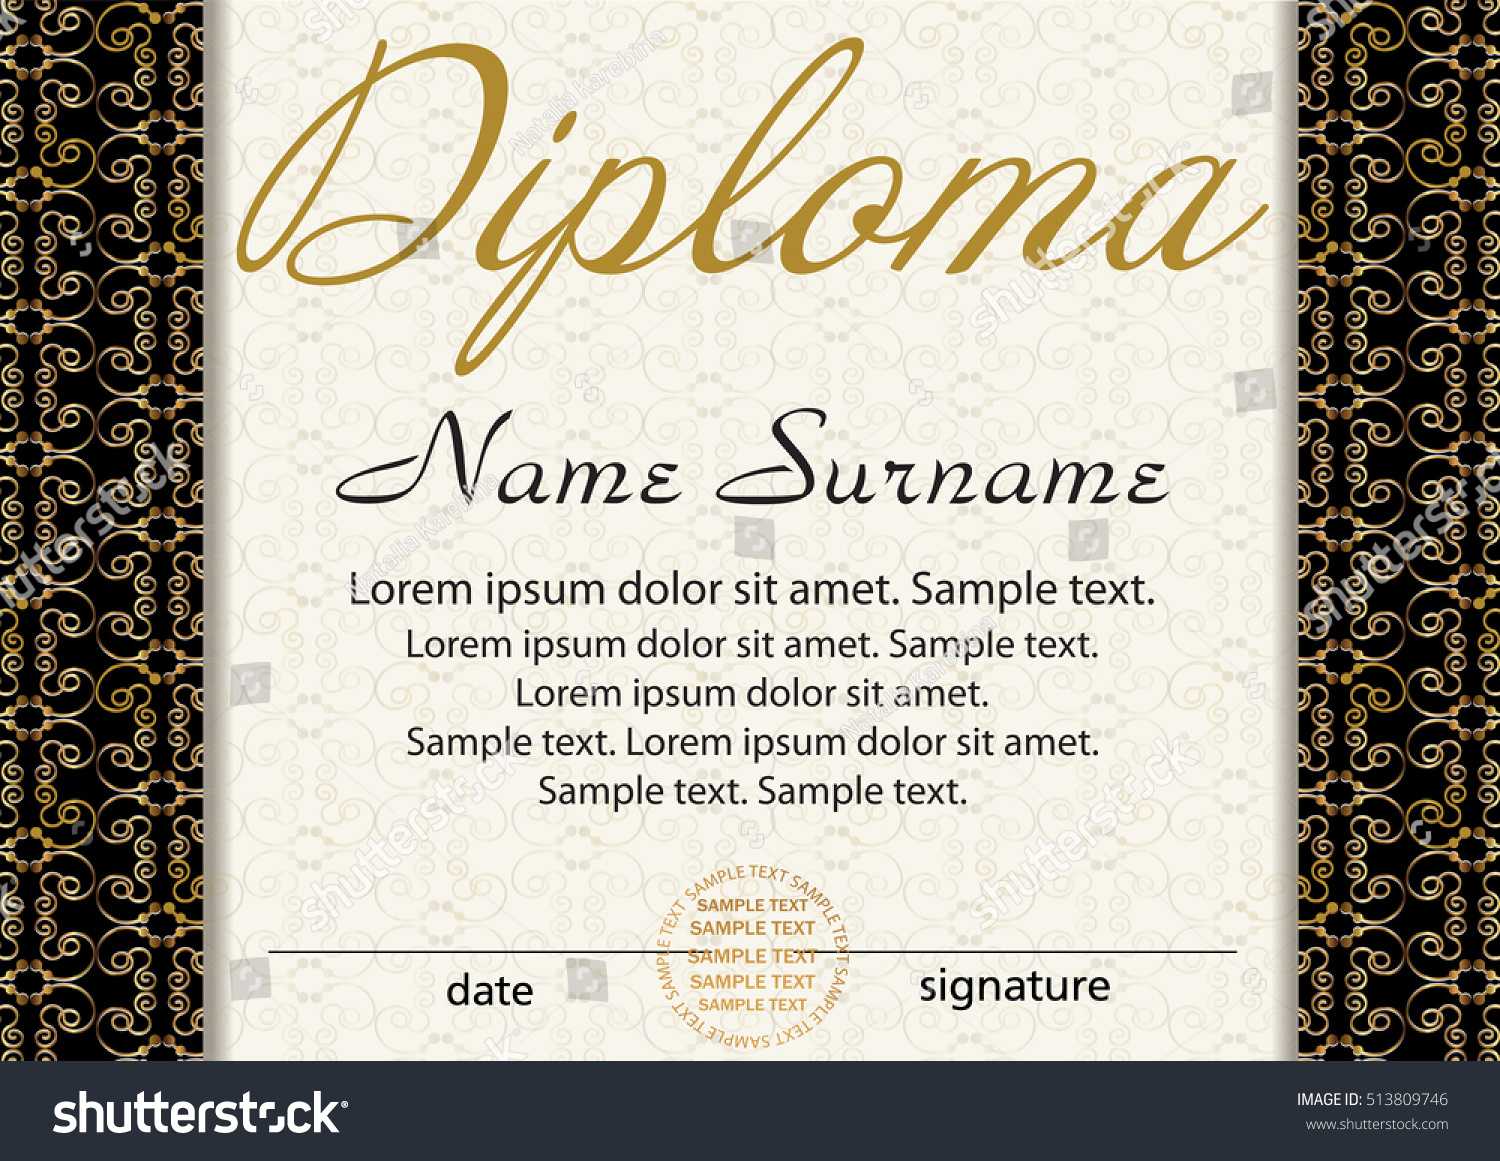 Diploma Certificate Template Award Winner Reward Stock Within Winner Certificate Template